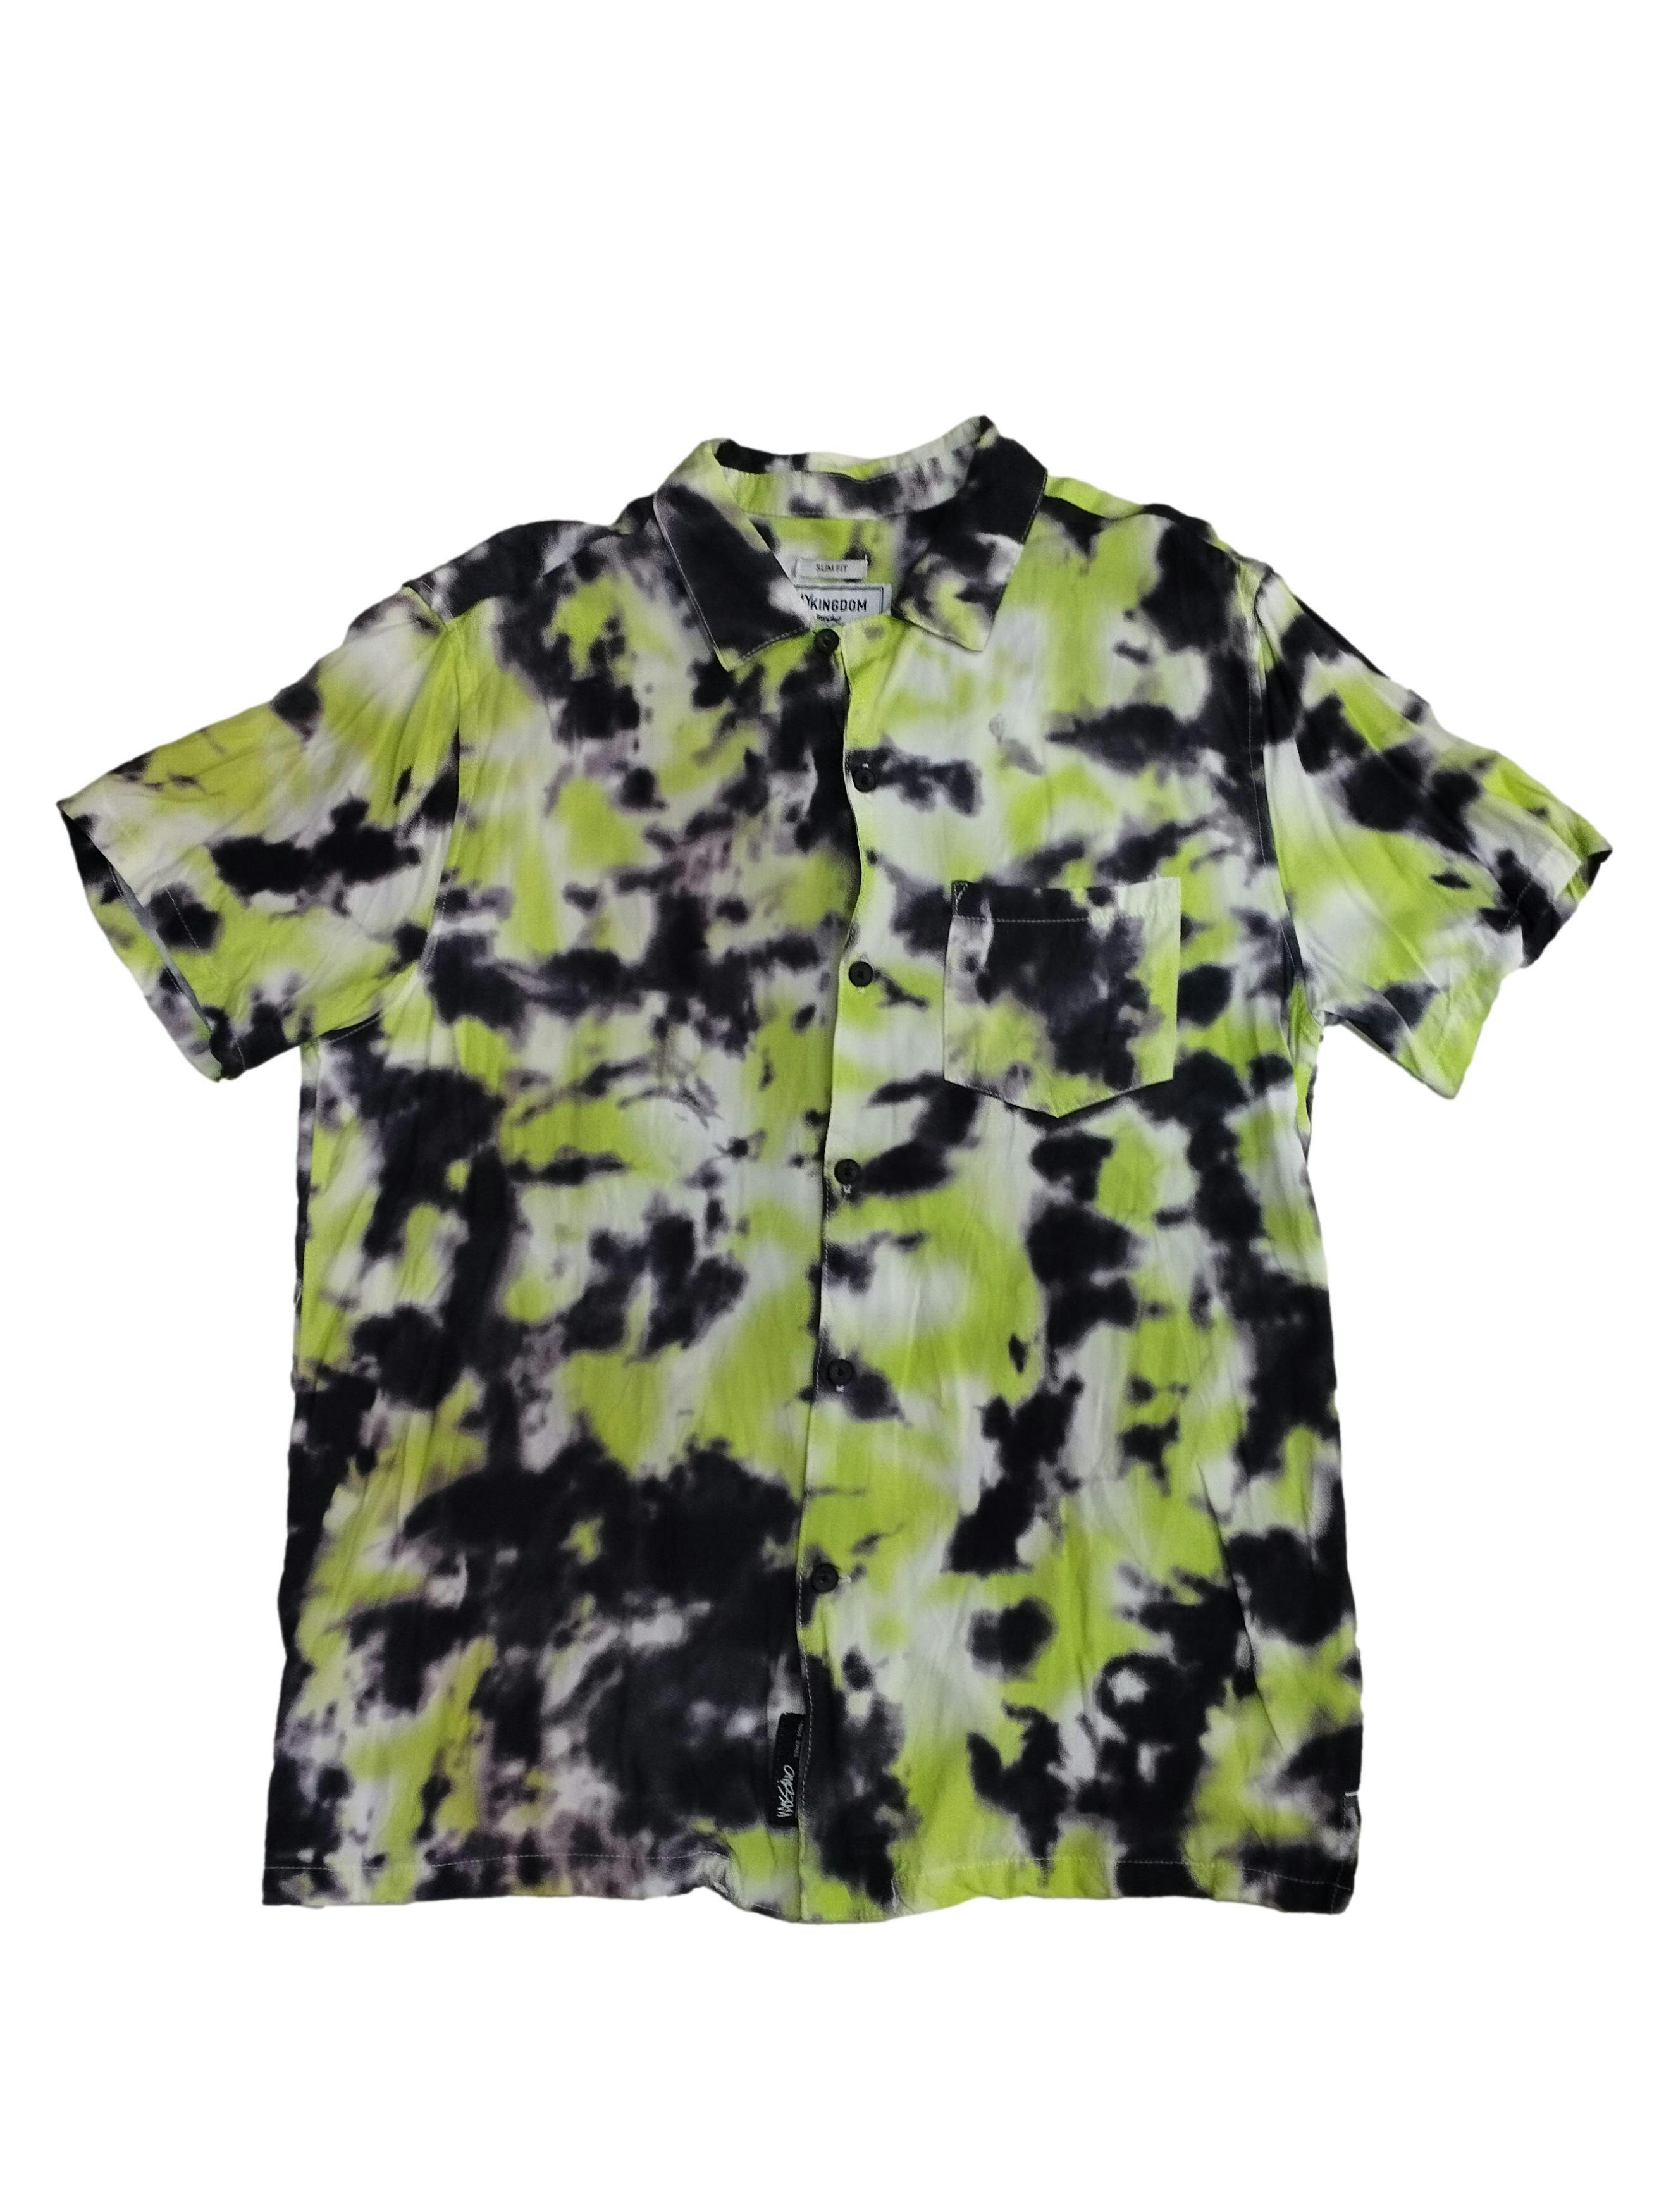 Camisa Mossimo estilo tie dye en tonos verde neón, gris y blanco, botones delanteros y bolsillo. Busto: 100 cm, Largo: 70 cm